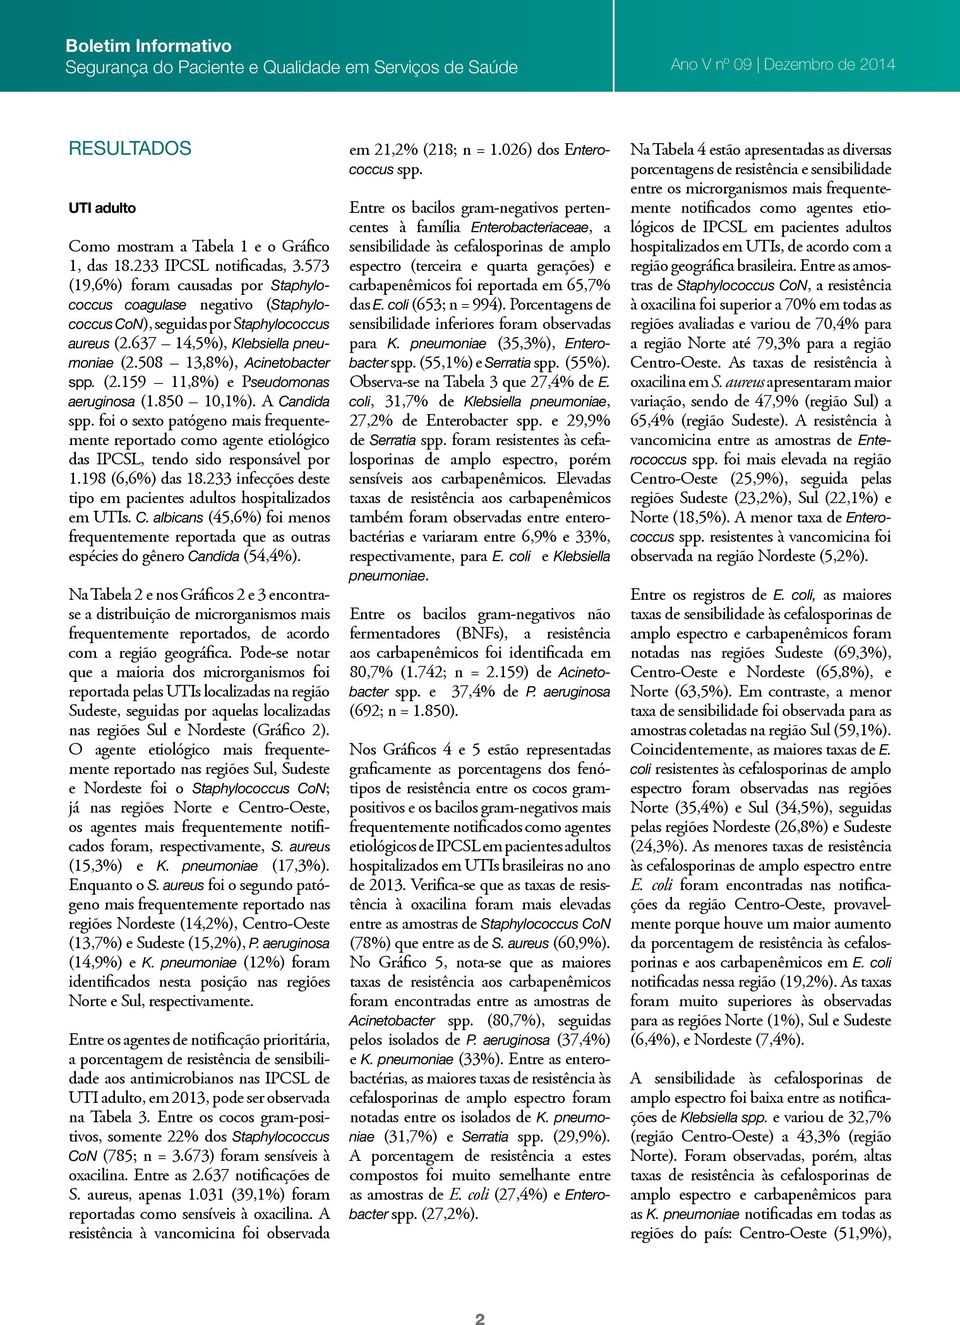 850 10,1%). A Candida spp. foi o sexto patógeno mais frequentemente reportado como agente etiológico das IPCSL, tendo sido responsável por 1.198 (6,6%) das 18.